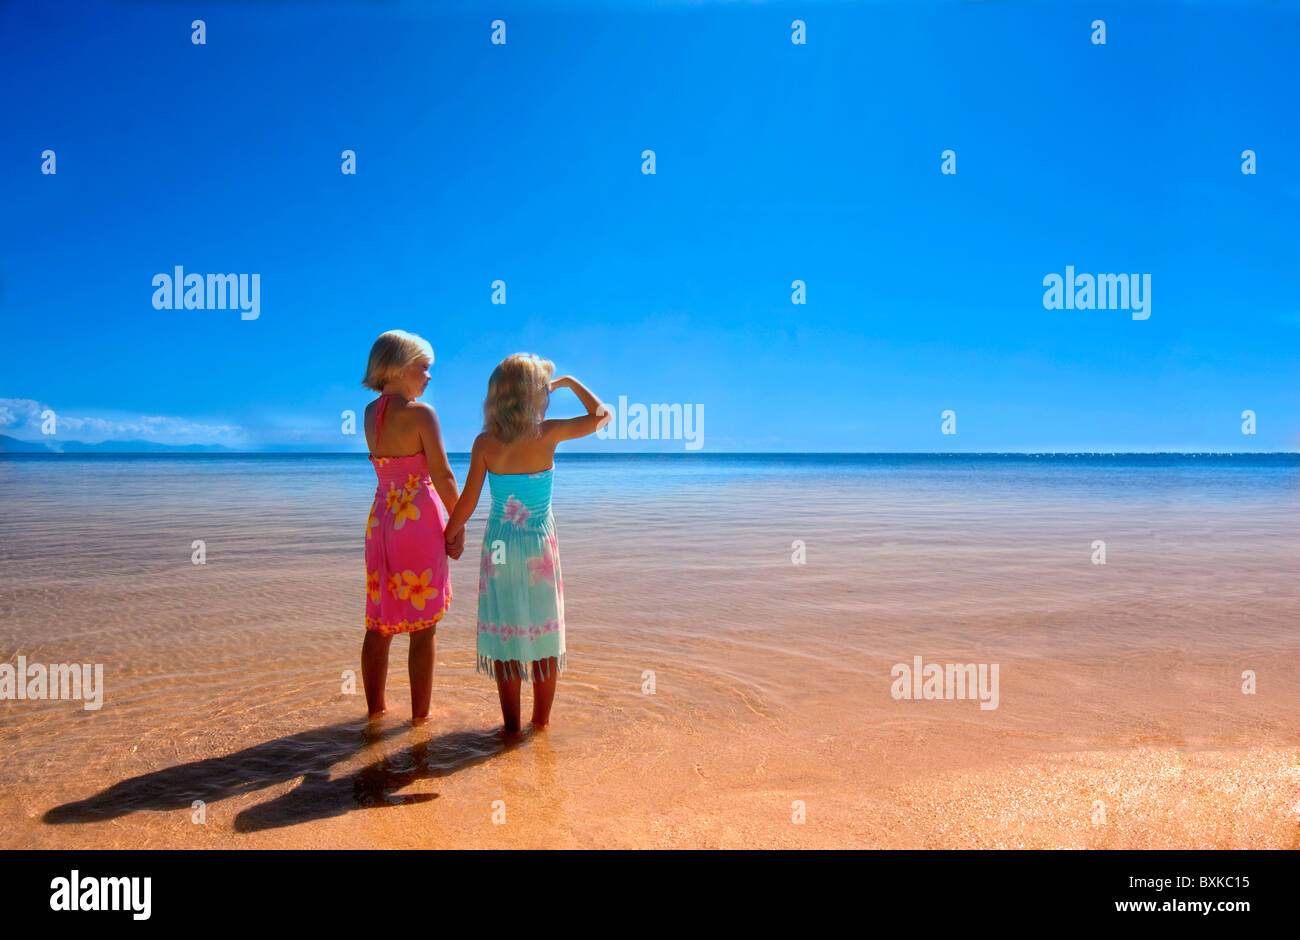 Deux jeunes filles se tenant la main sur une plage tropicale Banque D'Images